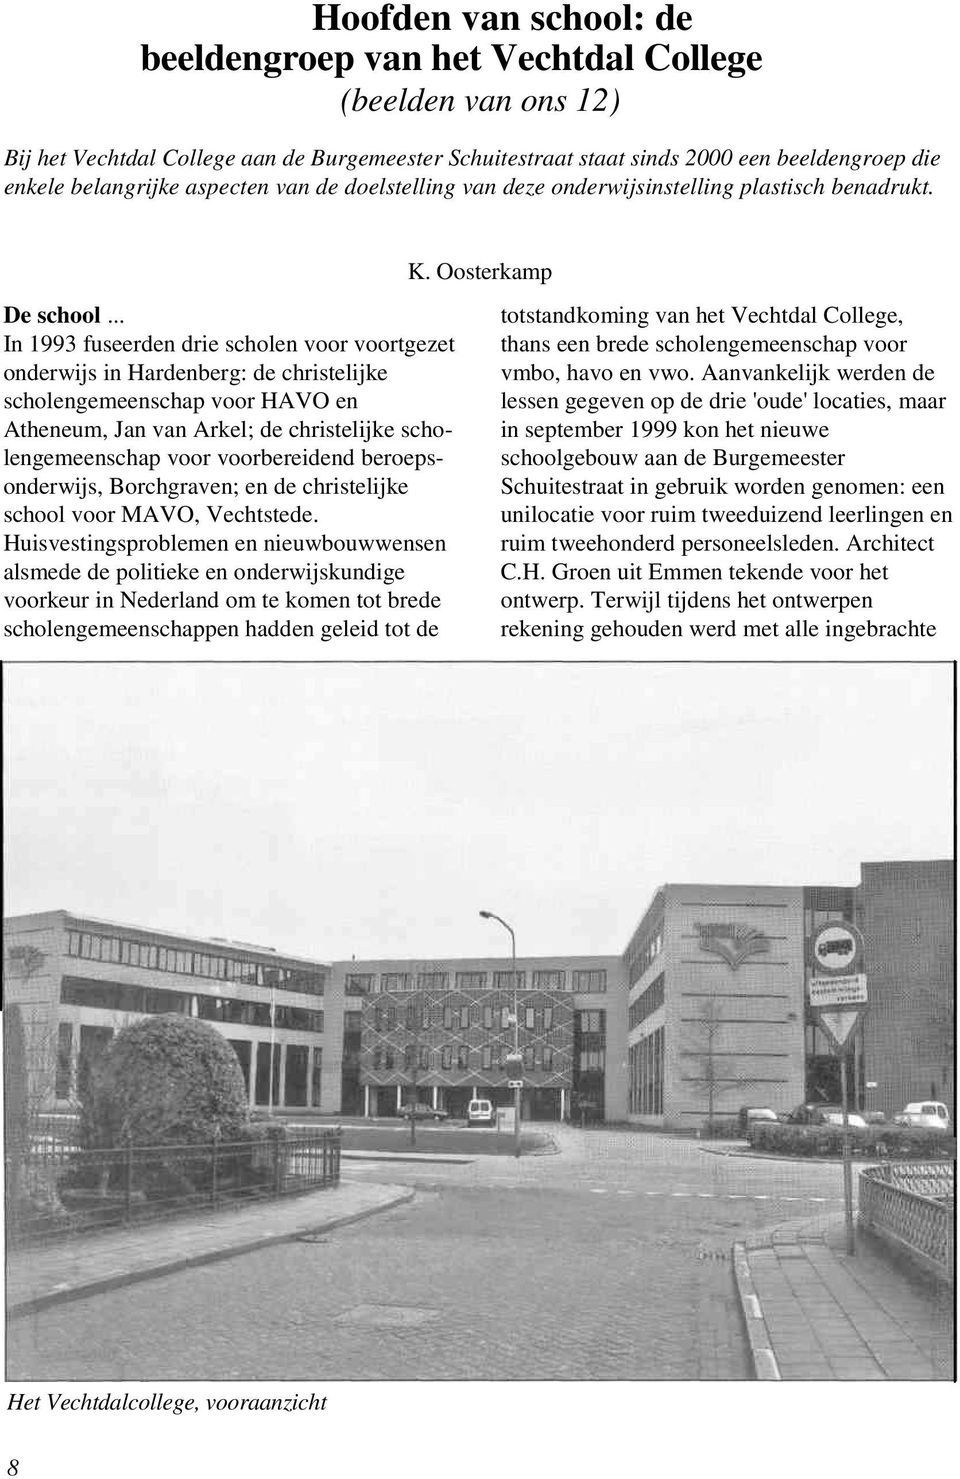 .. In 1993 fuseerden drie scholen voor voortgezet onderwijs in Hardenberg: de christelijke scholengemeenschap voor HAVO en Atheneum, Jan van Arkel; de christelijke scholengemeenschap voor